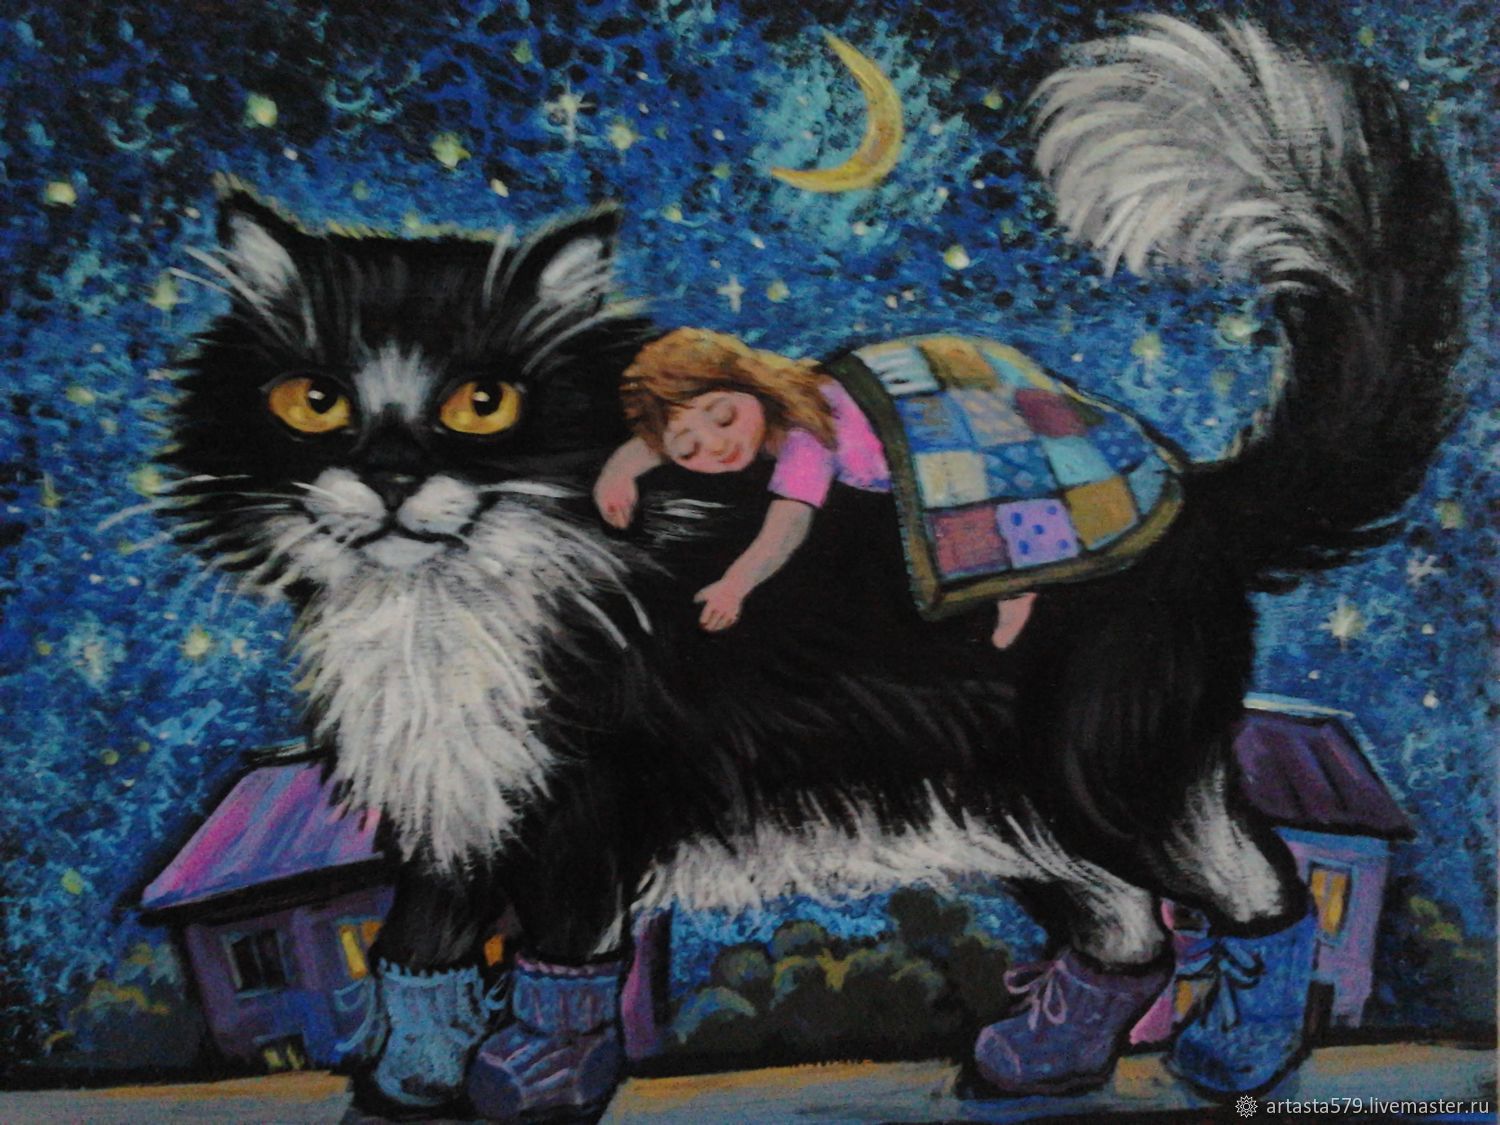 Рисунок кота баюна из сказки